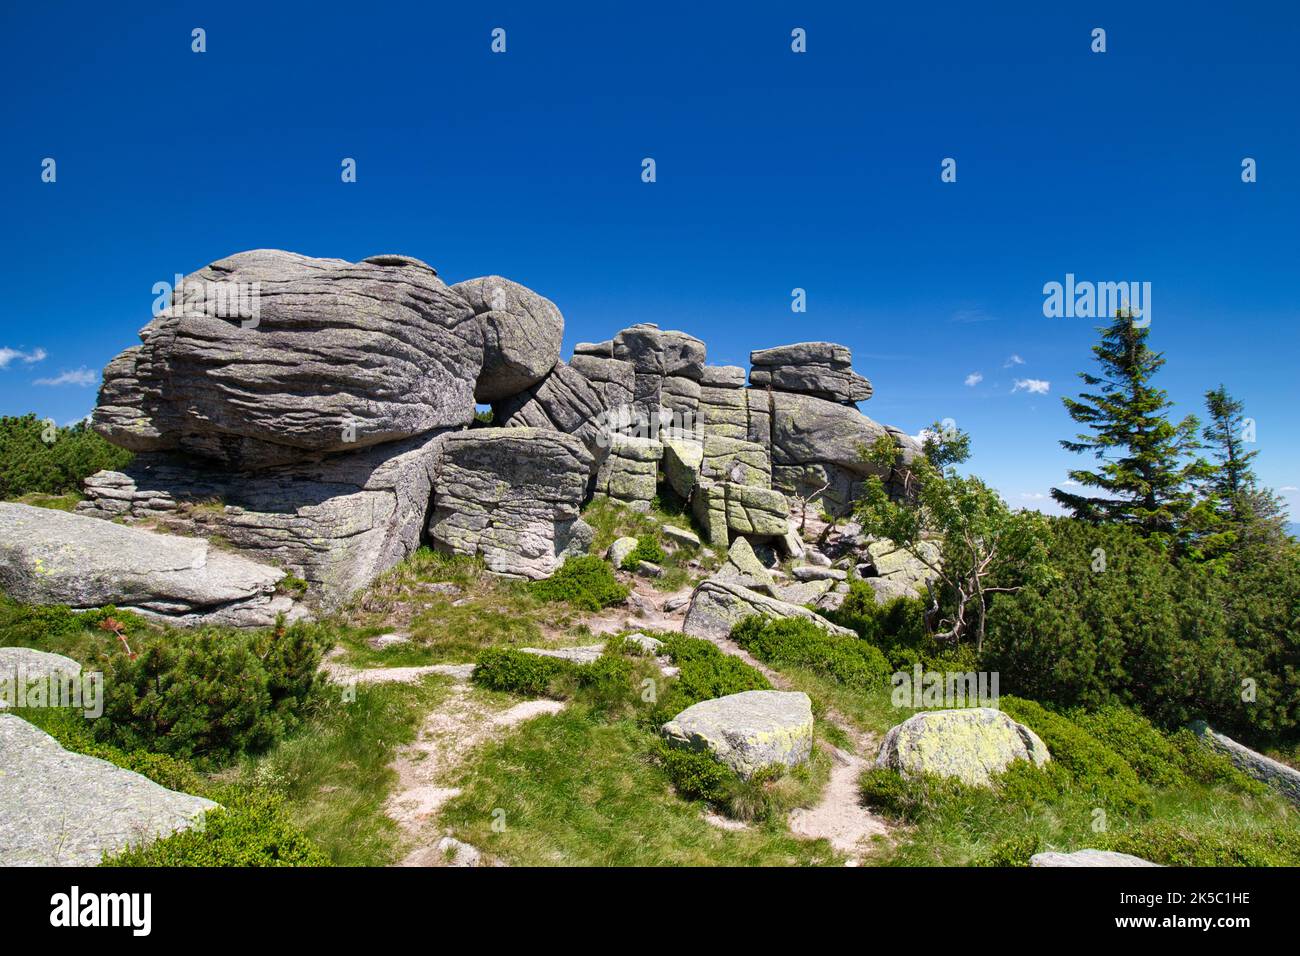 Formation de roches trois porcs - pierres en Pologne. Krkonose. Banque D'Images